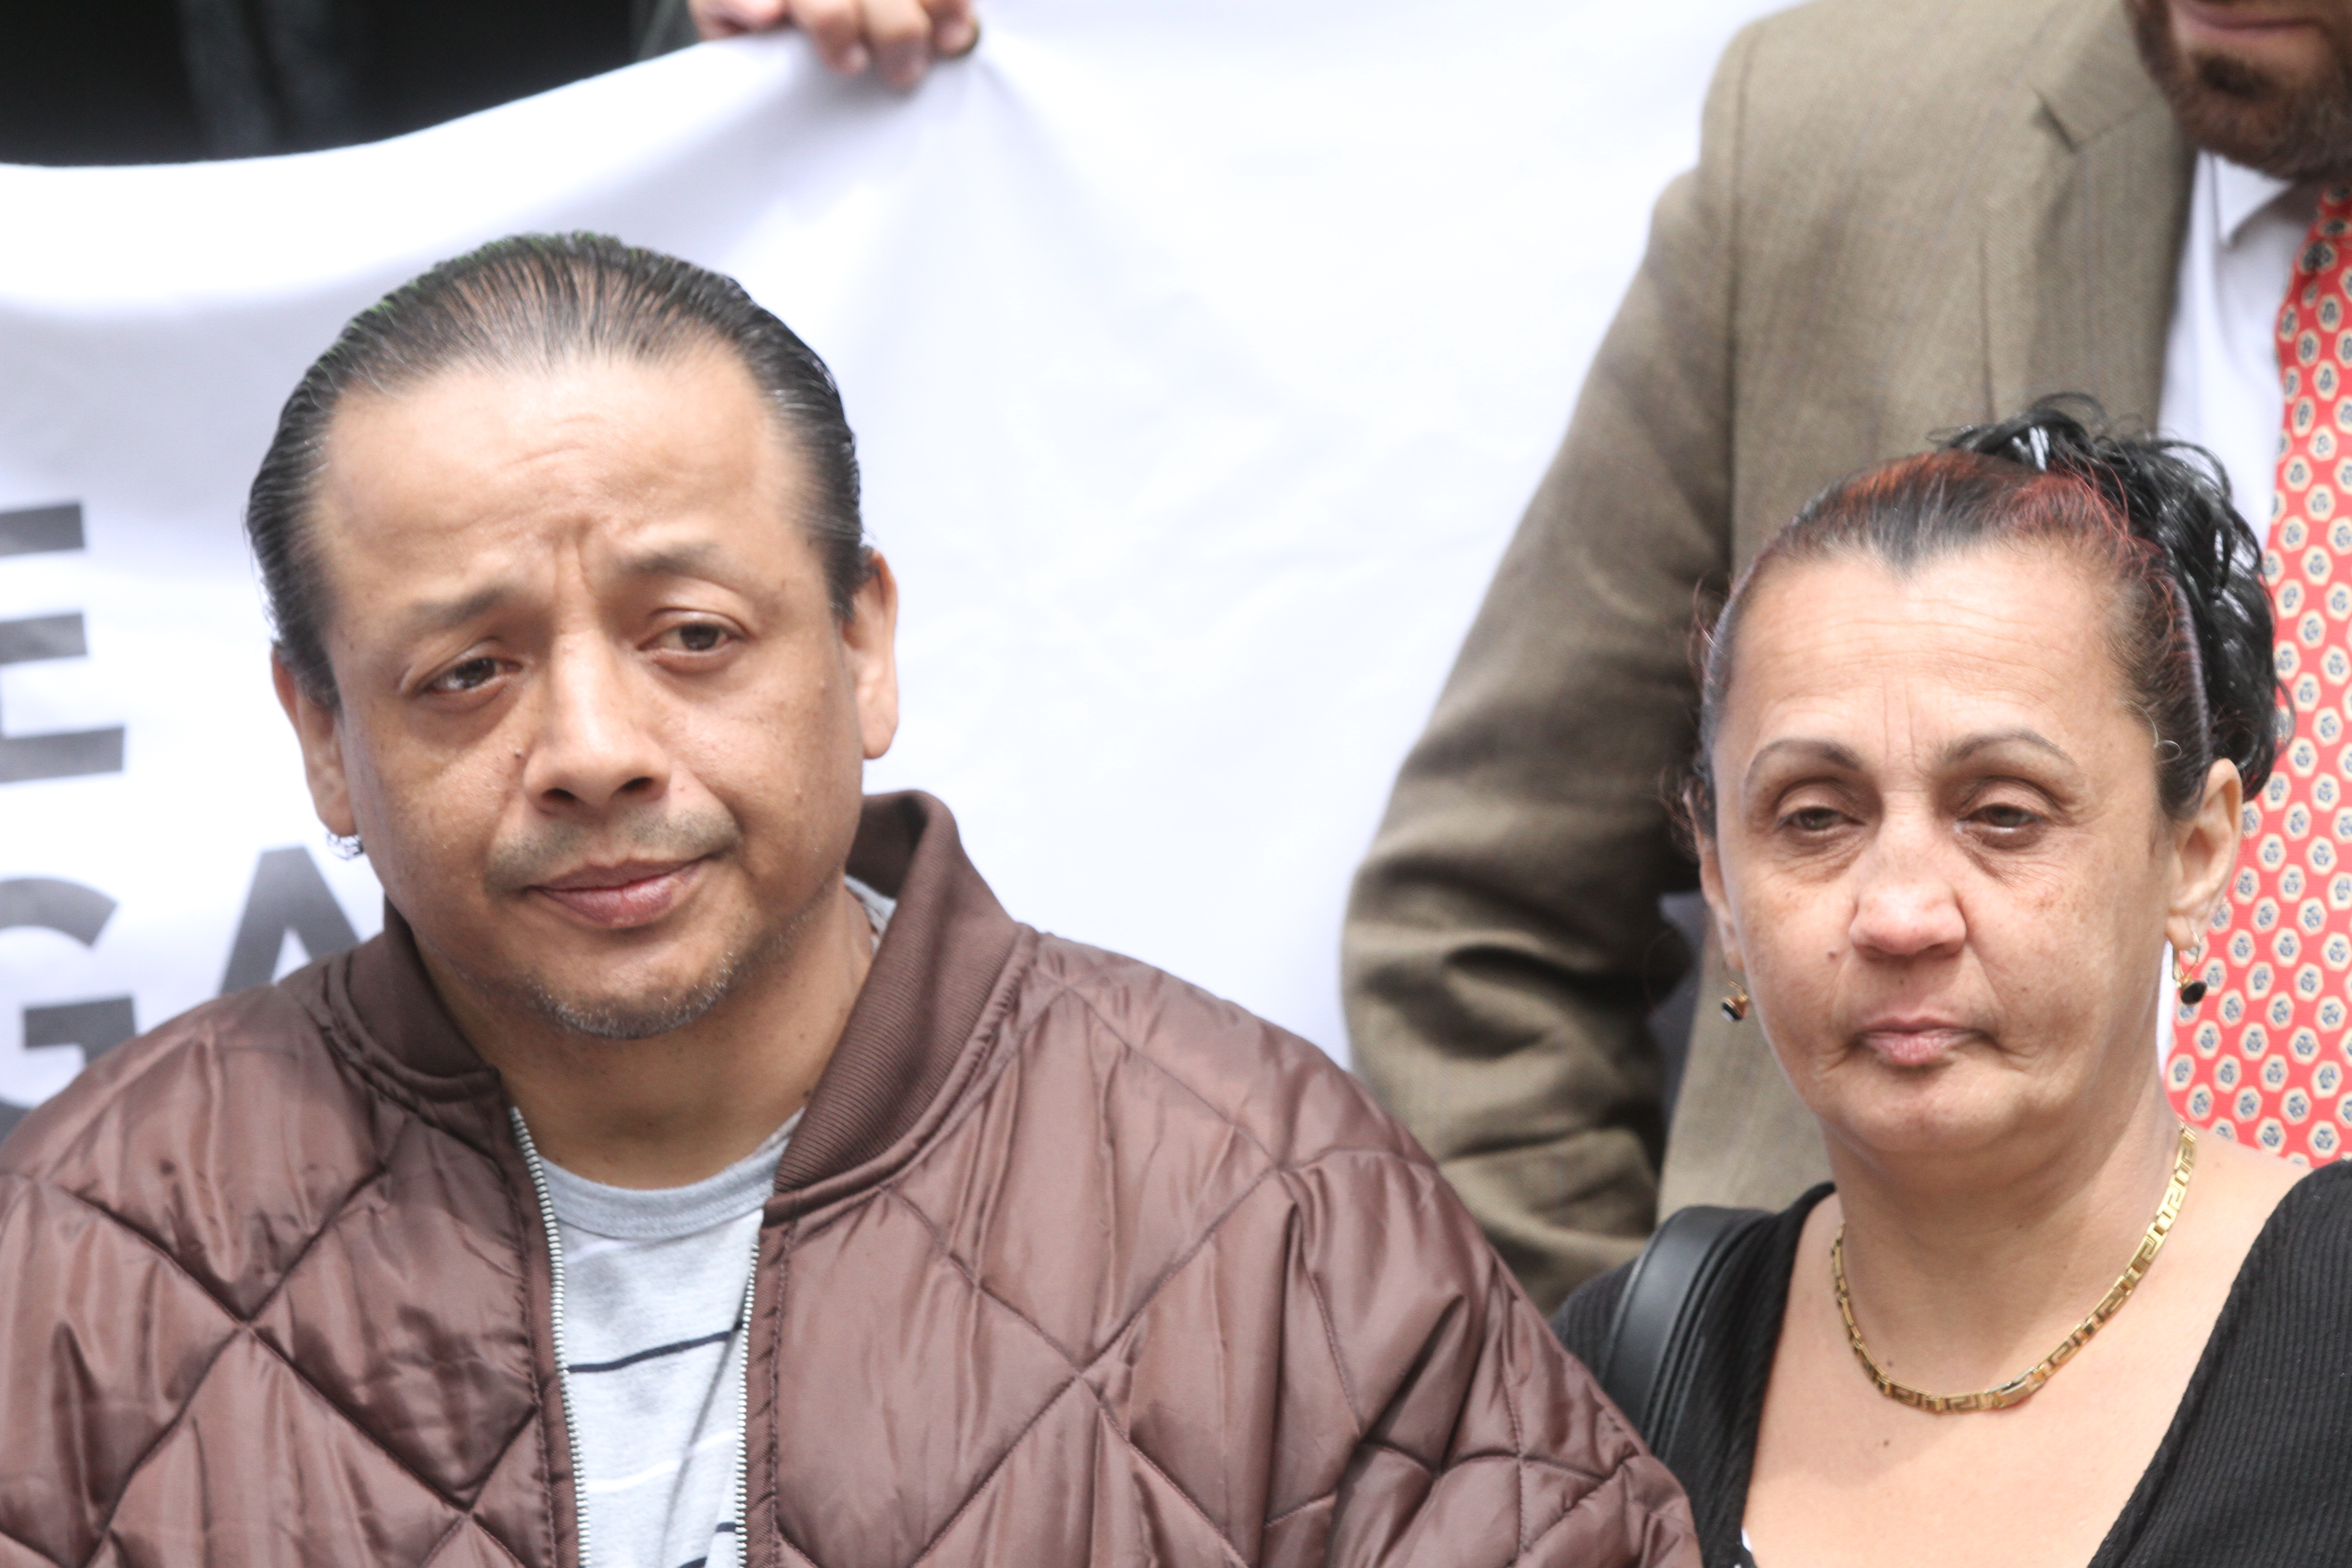 Inmigrante de Peru, Christian Yarleque con su esposa Angela. Inmigrantes y abogados manifiestan en City Hall para que los abogados puedan ayudarlos sin importar su estado legal.